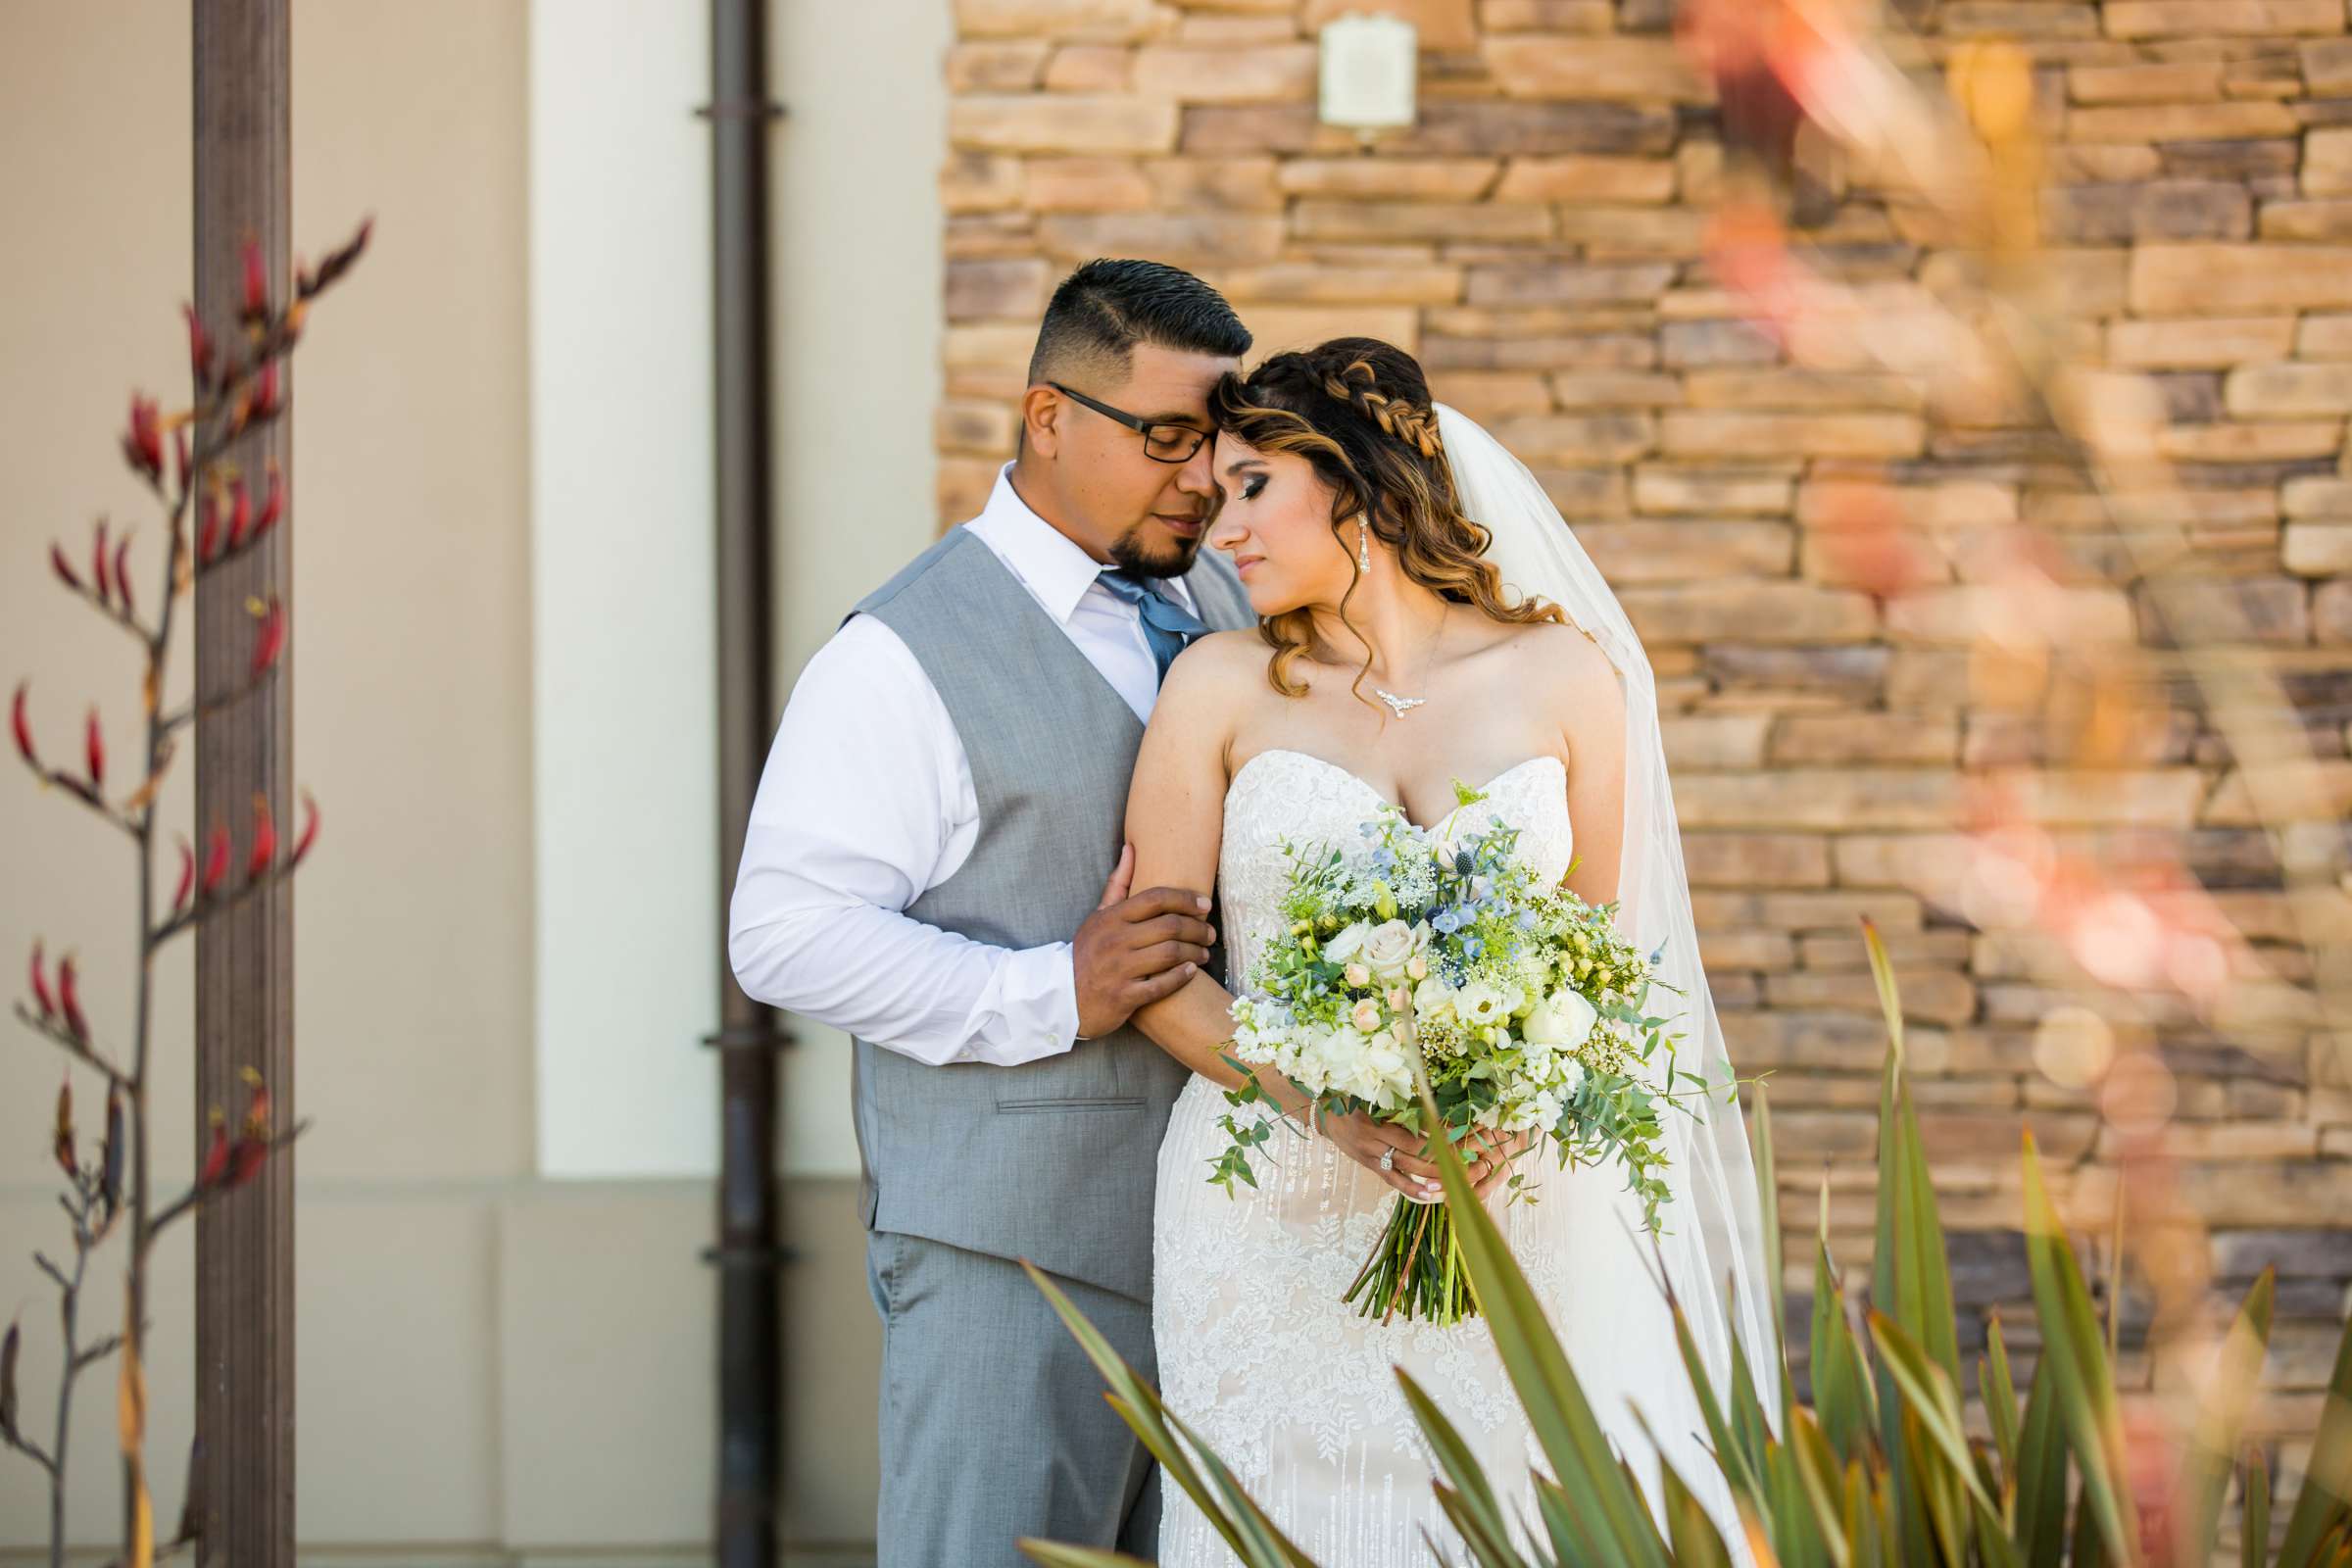 Del Mar Beach Resort Wedding coordinated by La Casa Del Mar, Alisa and Carlos Wedding Photo #380878 by True Photography